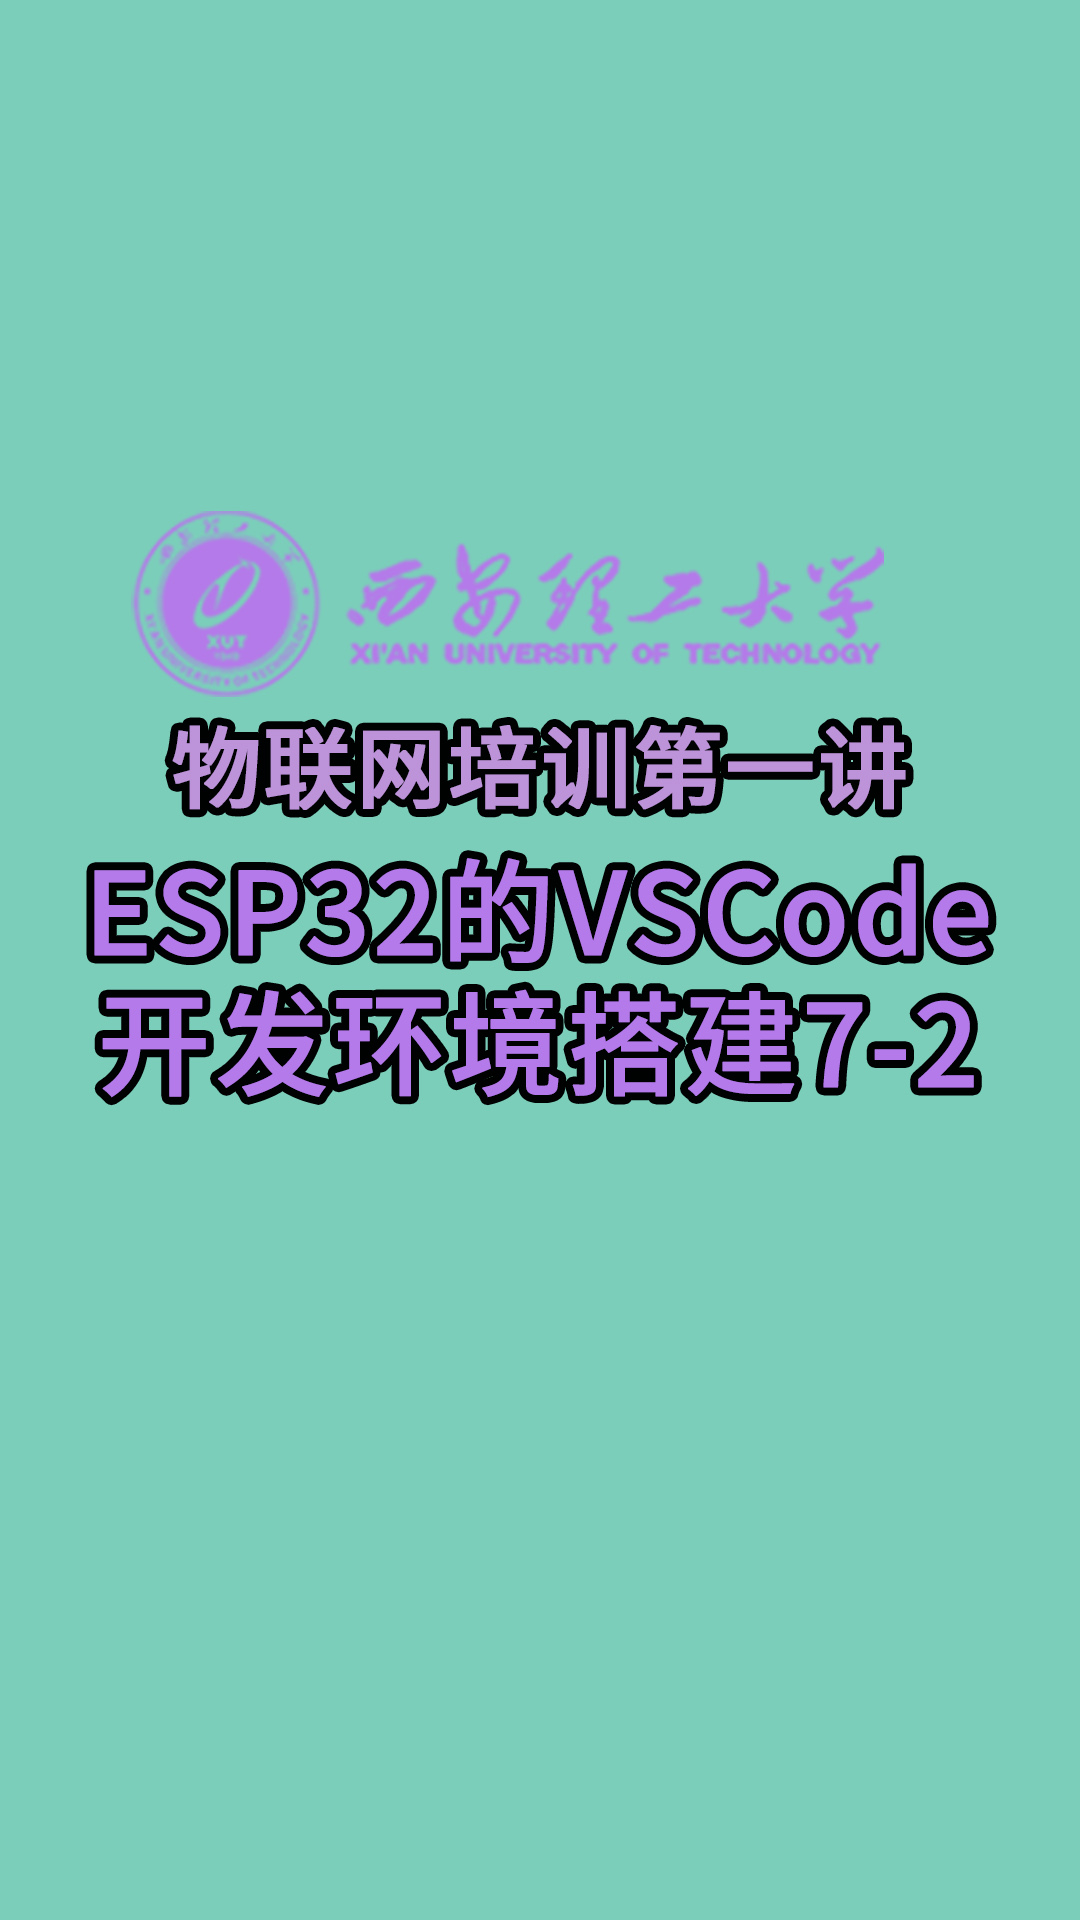 西安理工大学-物联网培训第一讲-ESP32的VSCode开发环境搭建7-2#物联网 